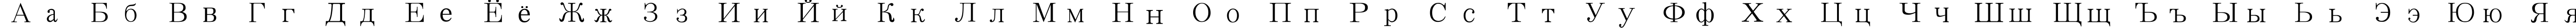 Пример написания русского алфавита шрифтом SimSun